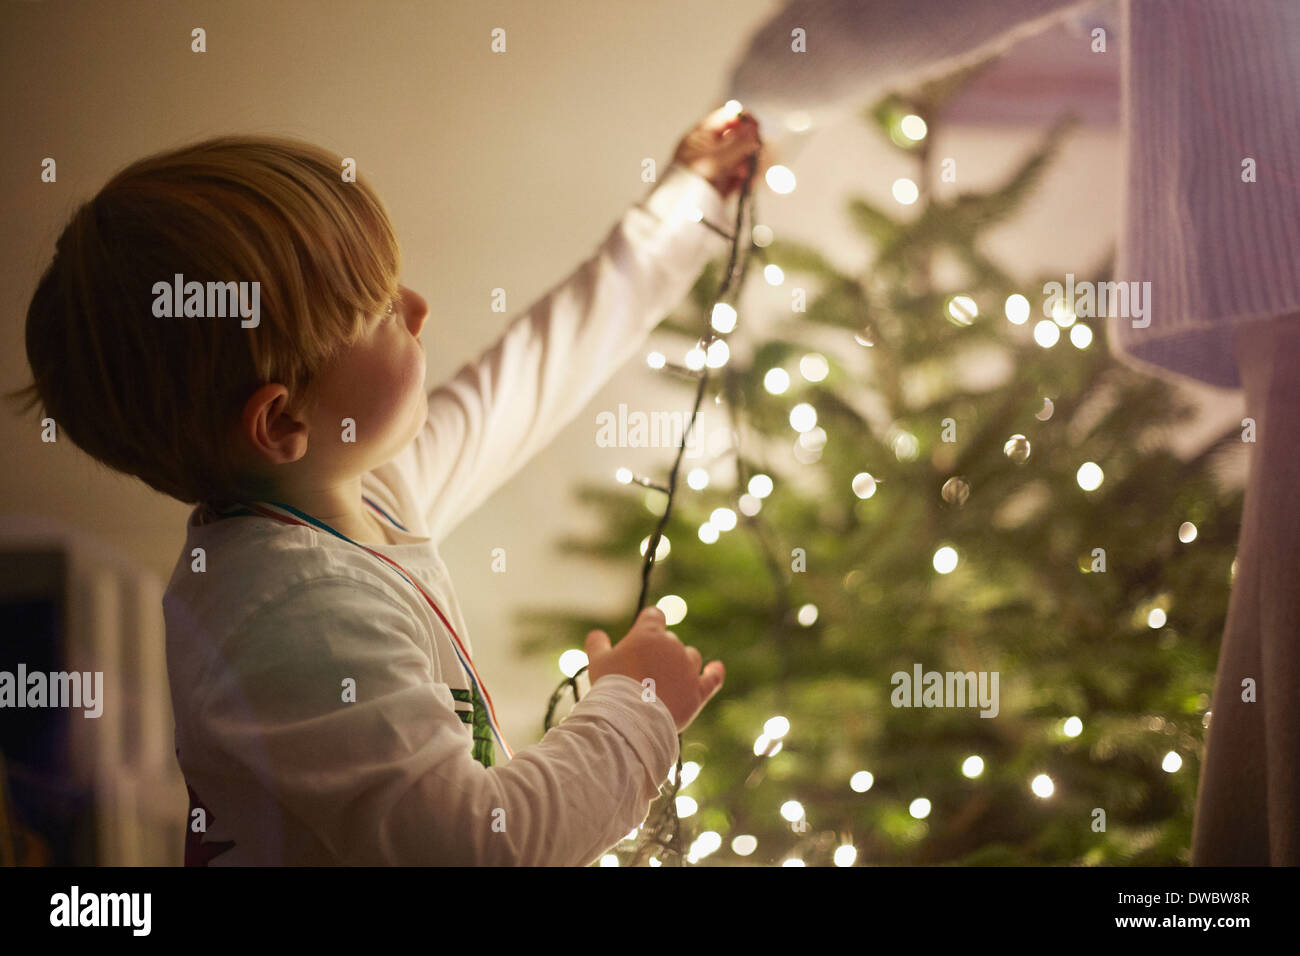 Jeune garçon de mettre en place des lumières d'arbre de Noël Banque D'Images